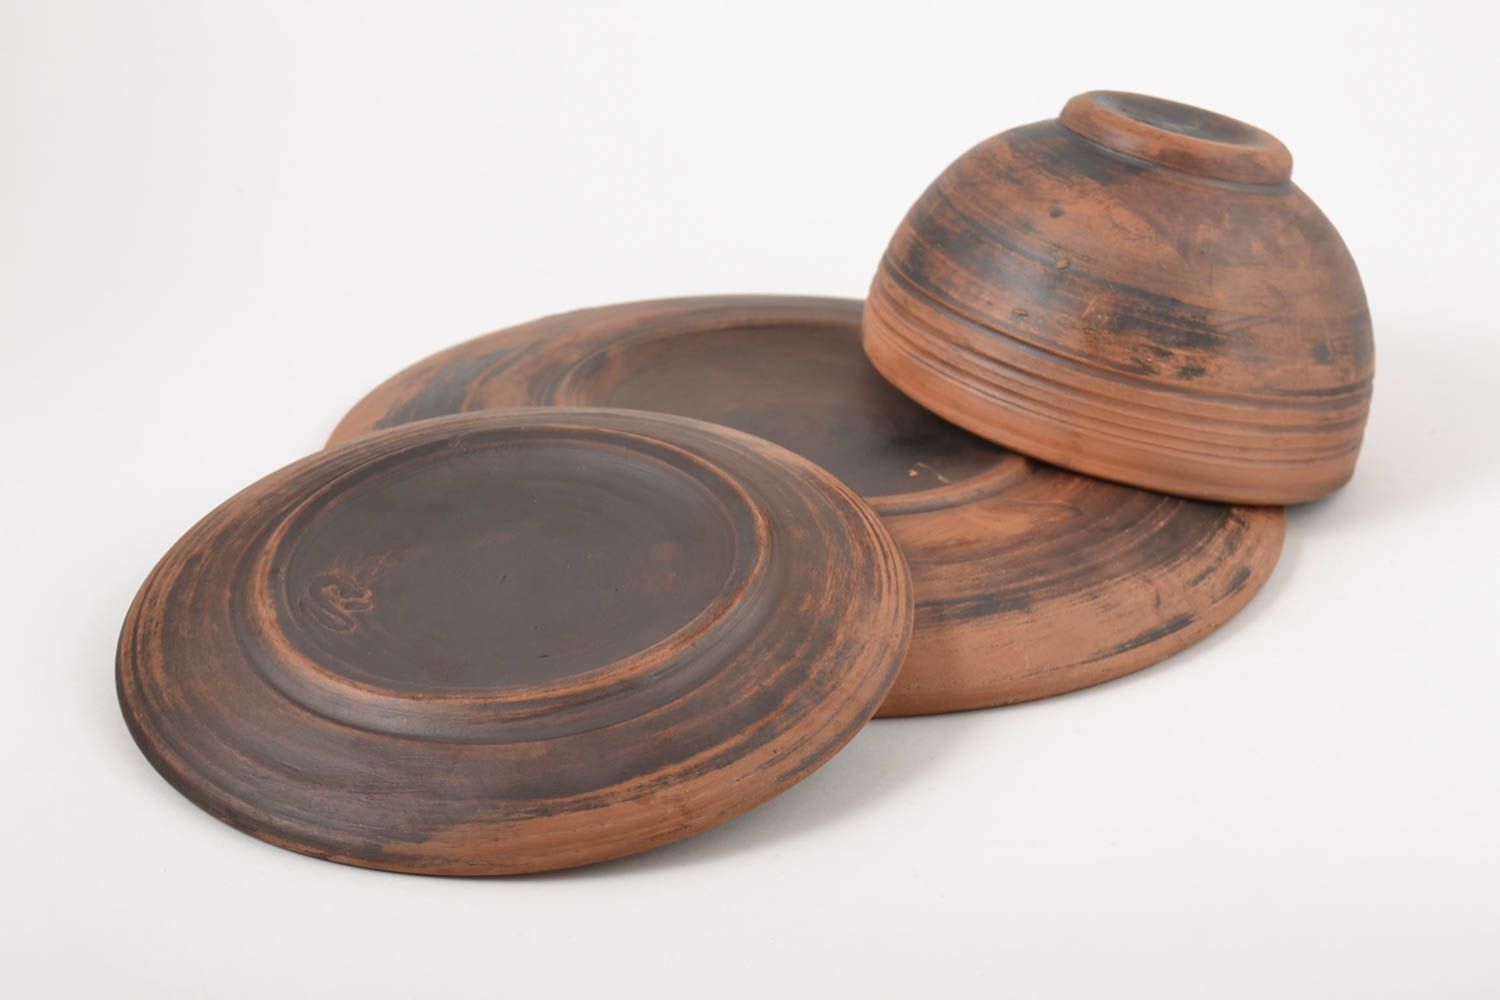 Ceramic designer plates unusual handmade kitchenware 3 stylish lovely plates photo 5